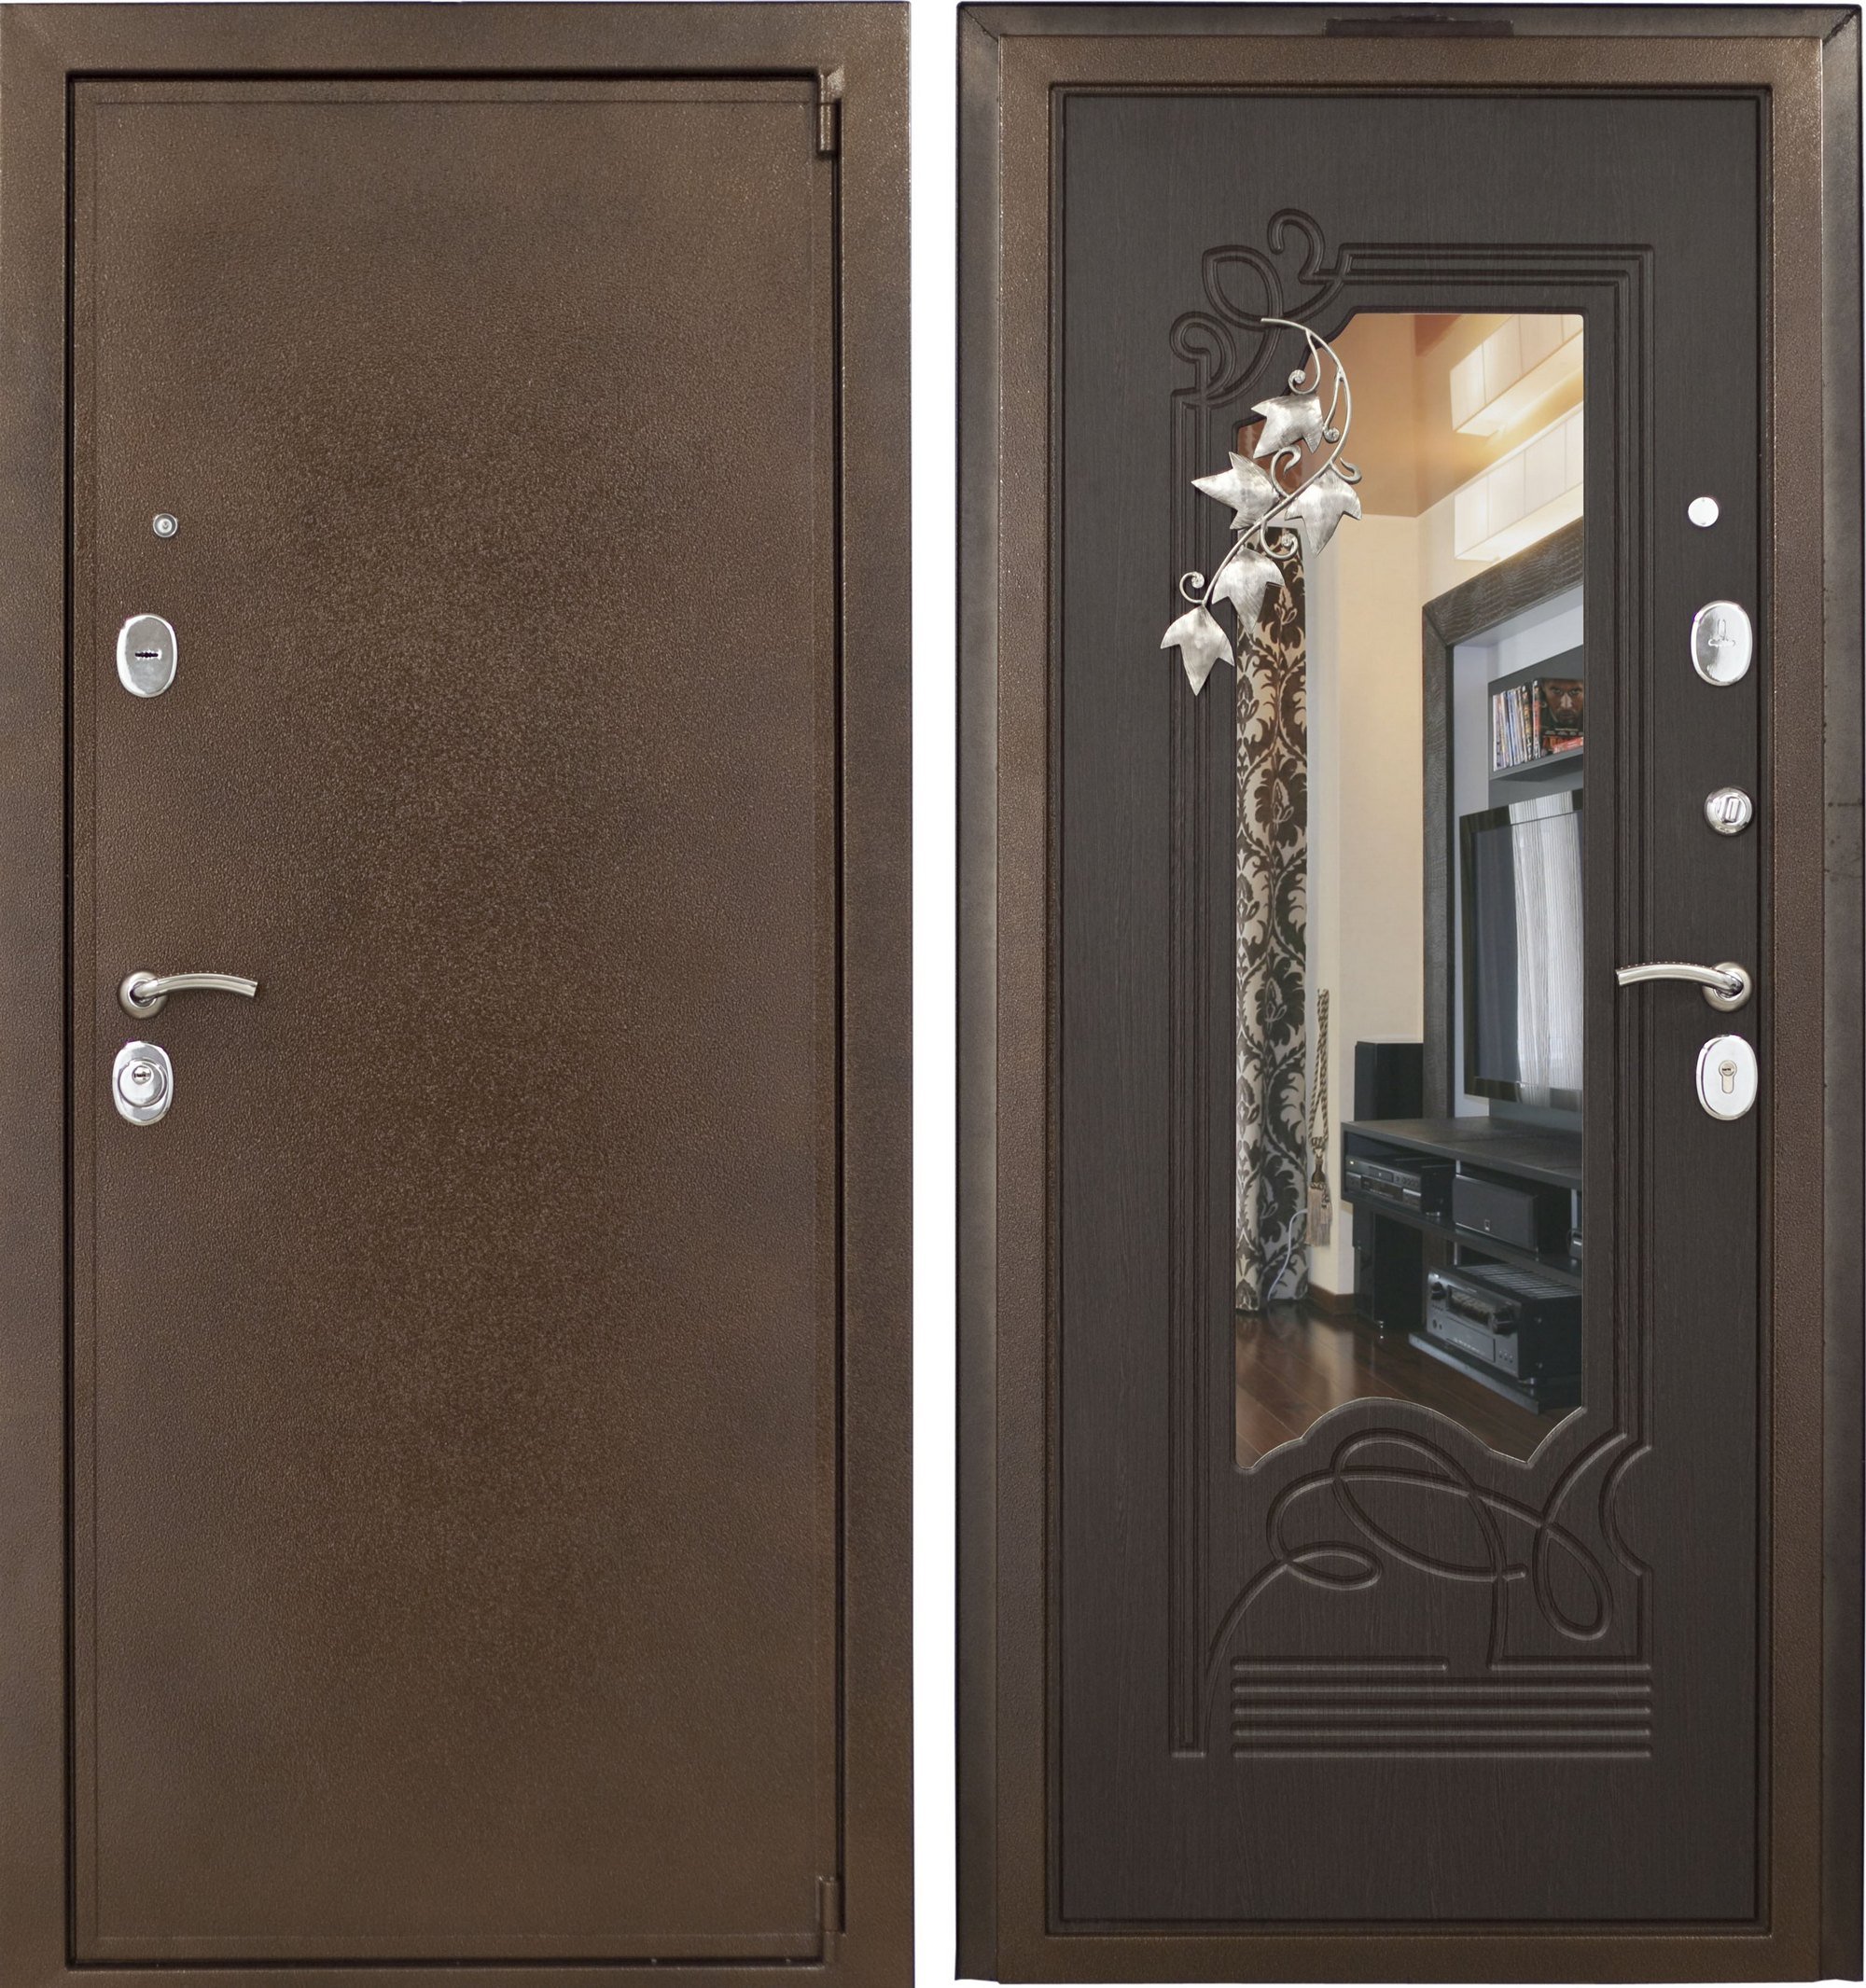 Железная дверь с зеркалом. Бастион входная дверь с зеркалом классика. Ferro Doors входные двери с зеркалом. Дверь с терморазрывом с зеркалом. Двери Бастион с зеркалом.